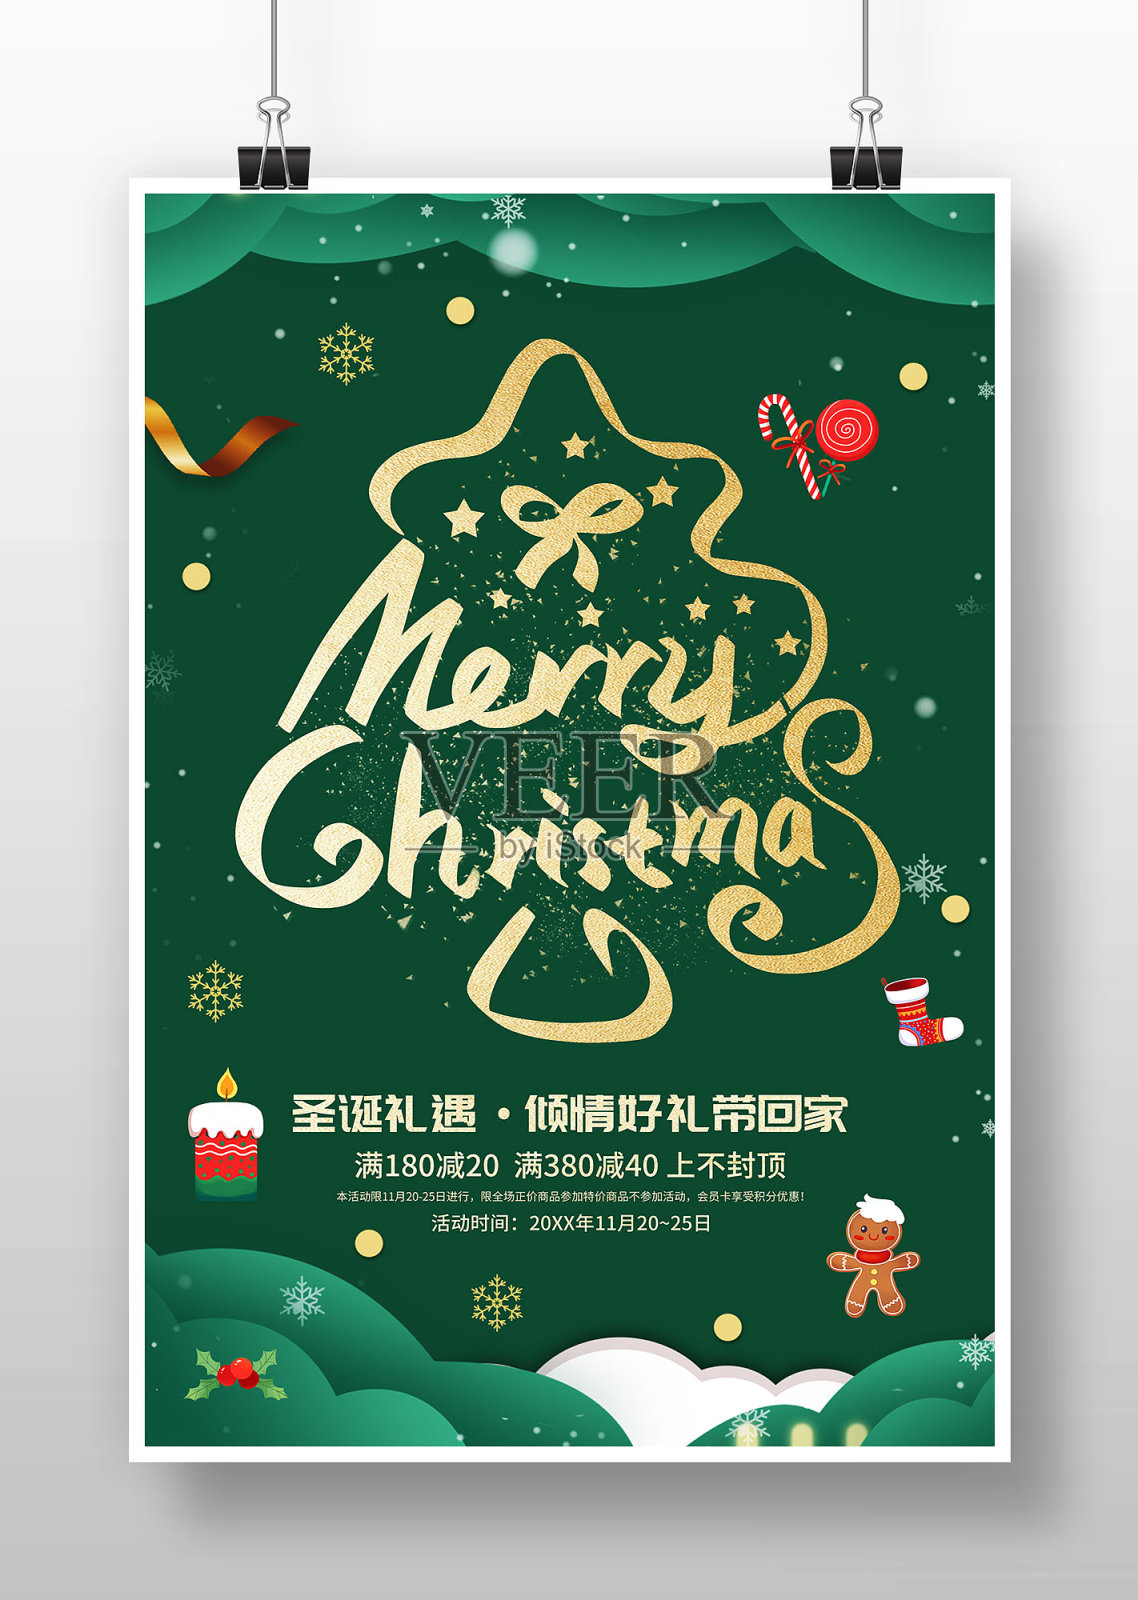 创意圣诞节促销海报设计模板素材